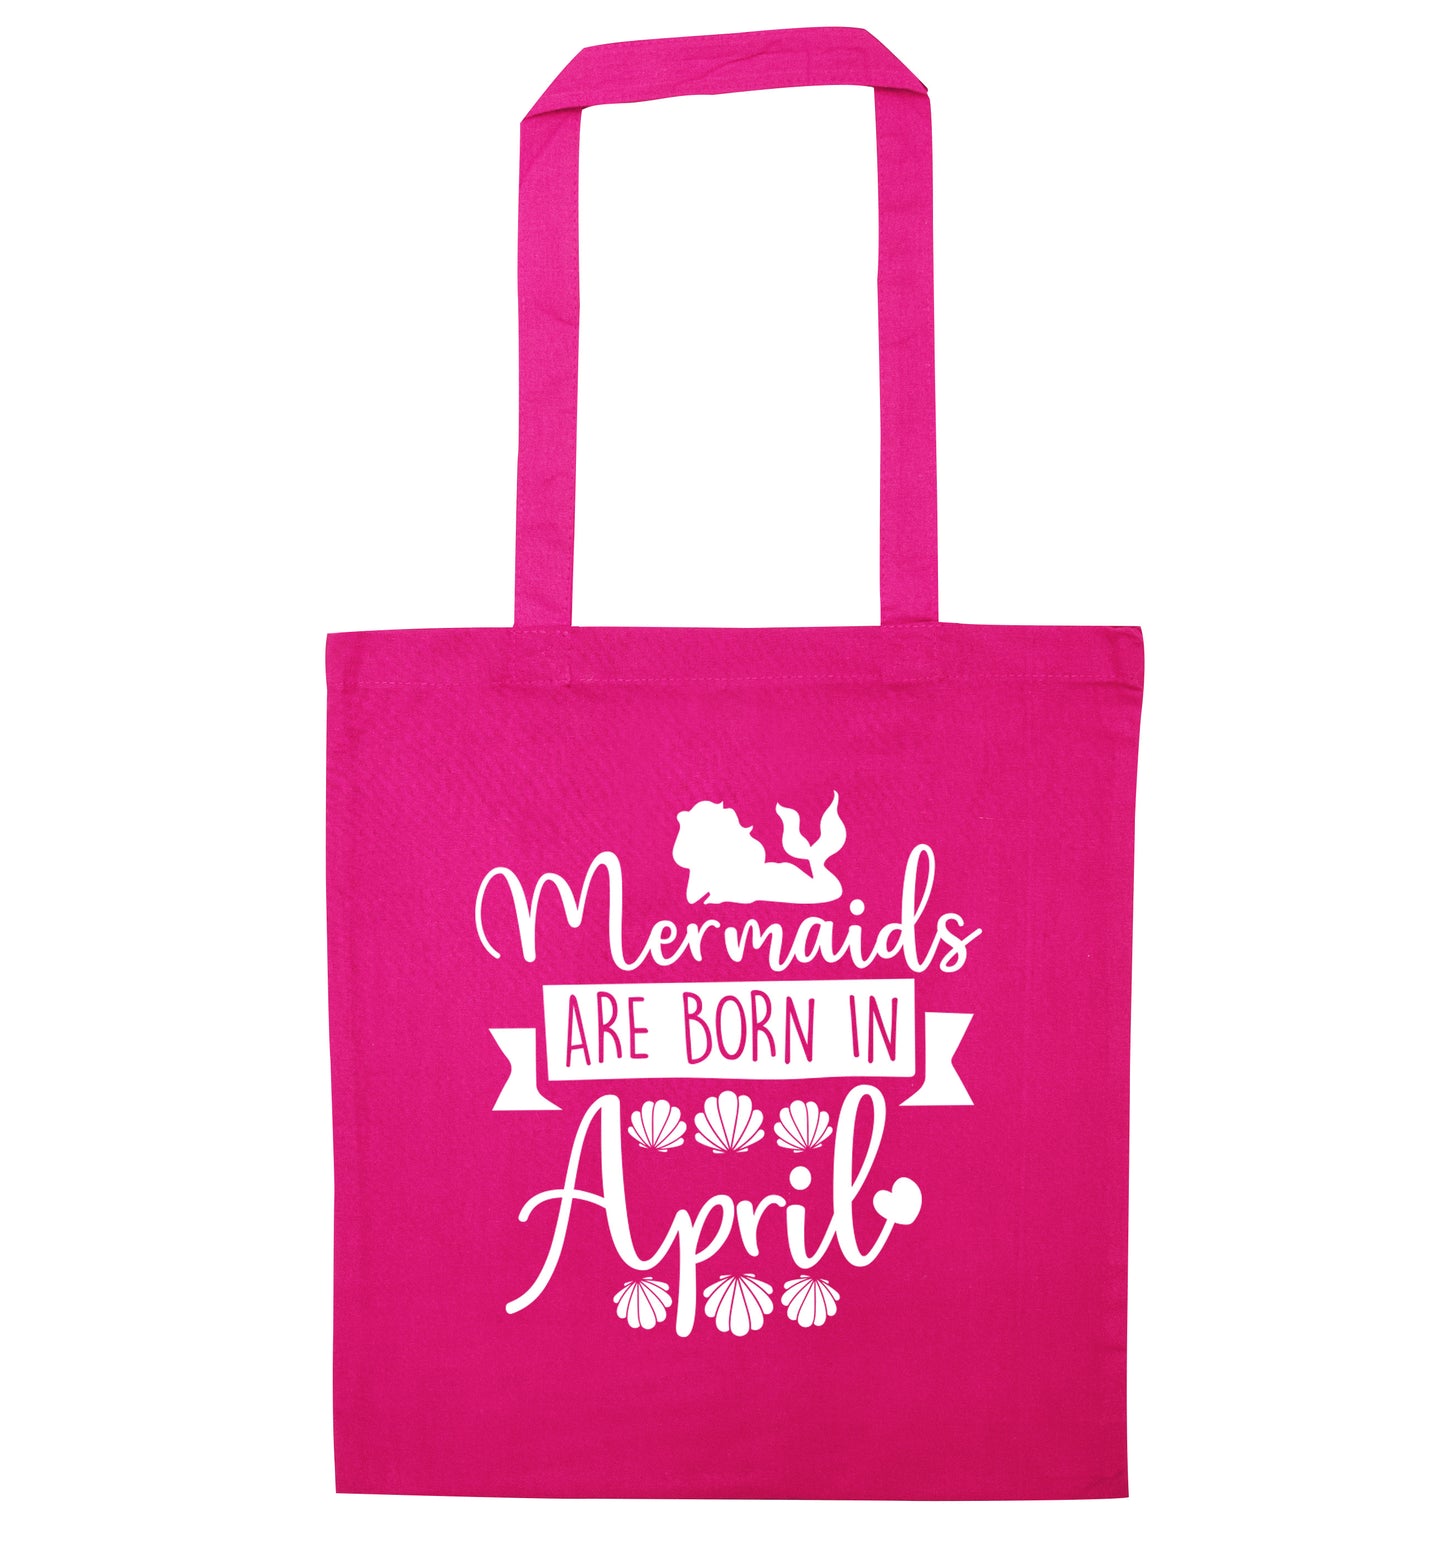 Mermaids are born in April pink tote bag